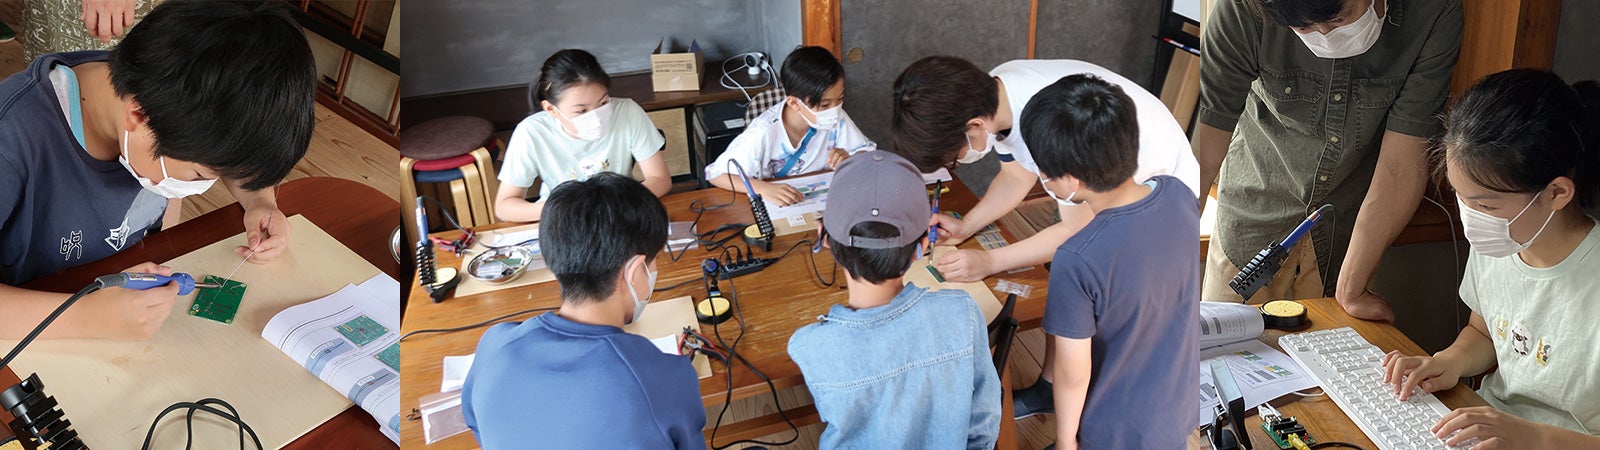 子ども達に科学の楽しさを伝え、地域の課題解決や活性化につなげる「軽井沢ICTクラブ」に参画